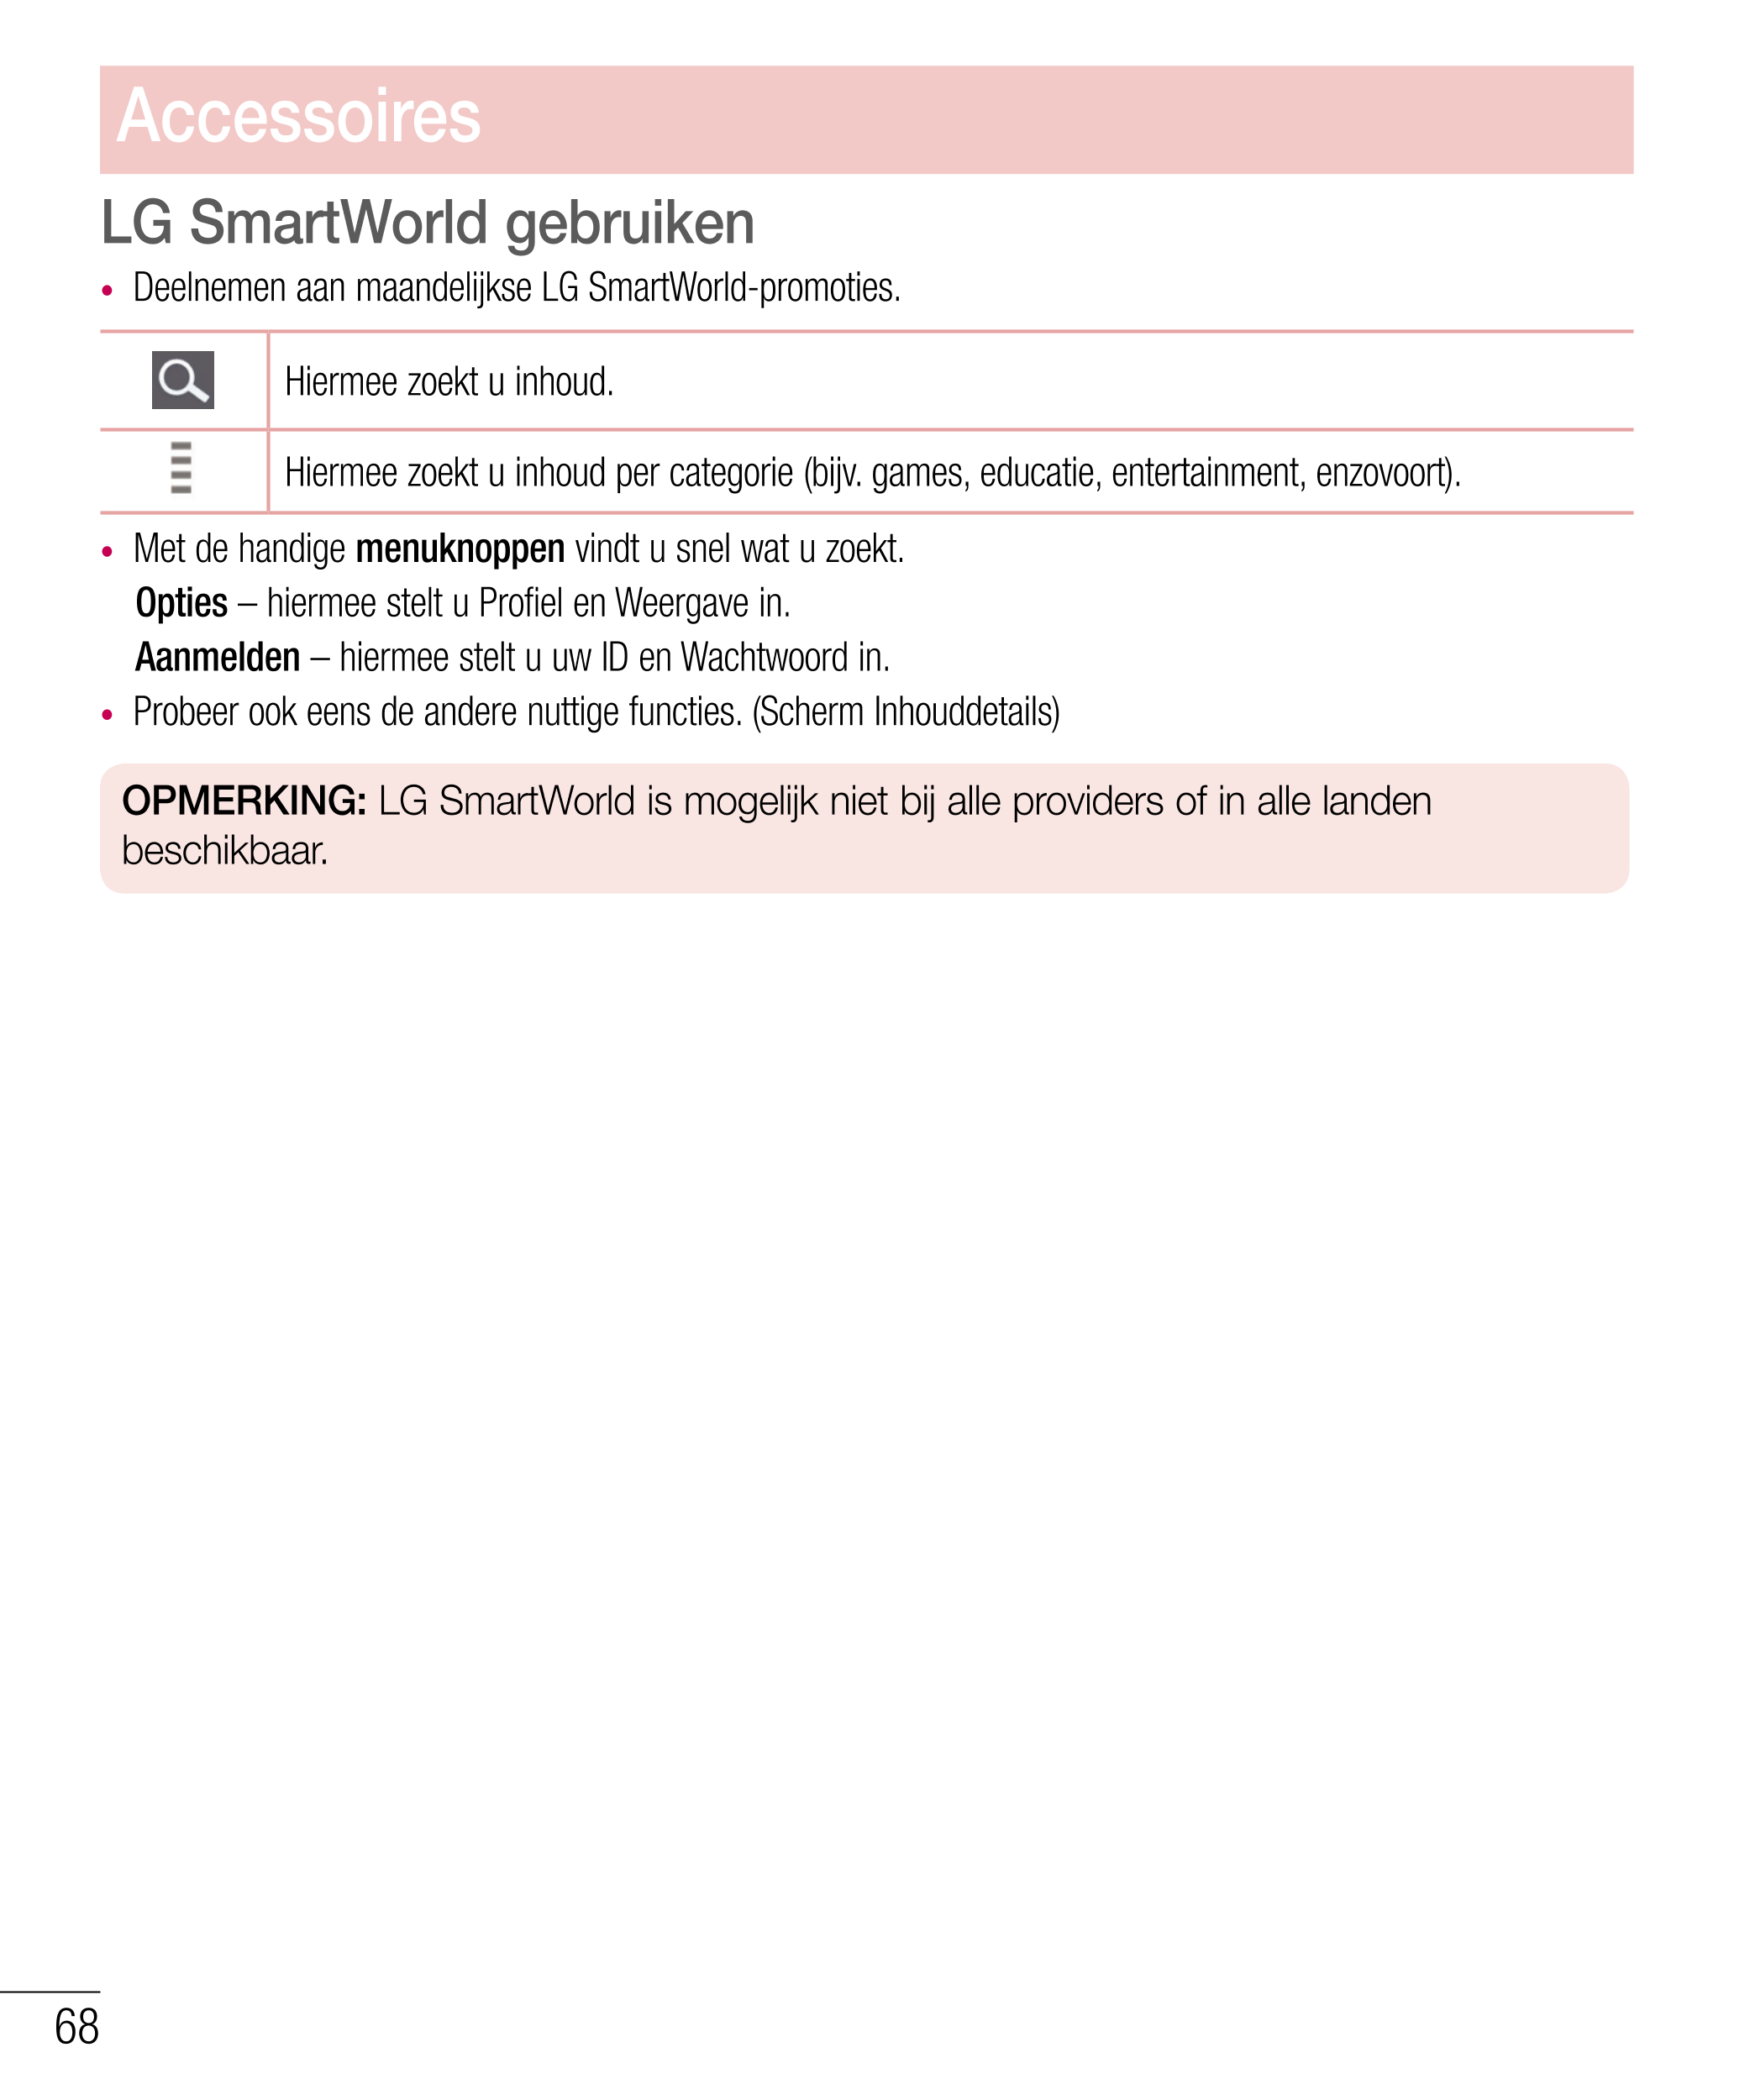 Accessoires
LG SmartWorld gebruiken
•  Deelnemen aan maandelijkse LG SmartWorld-promoties.
Hiermee zoekt u inhoud.
Hiermee zoekt